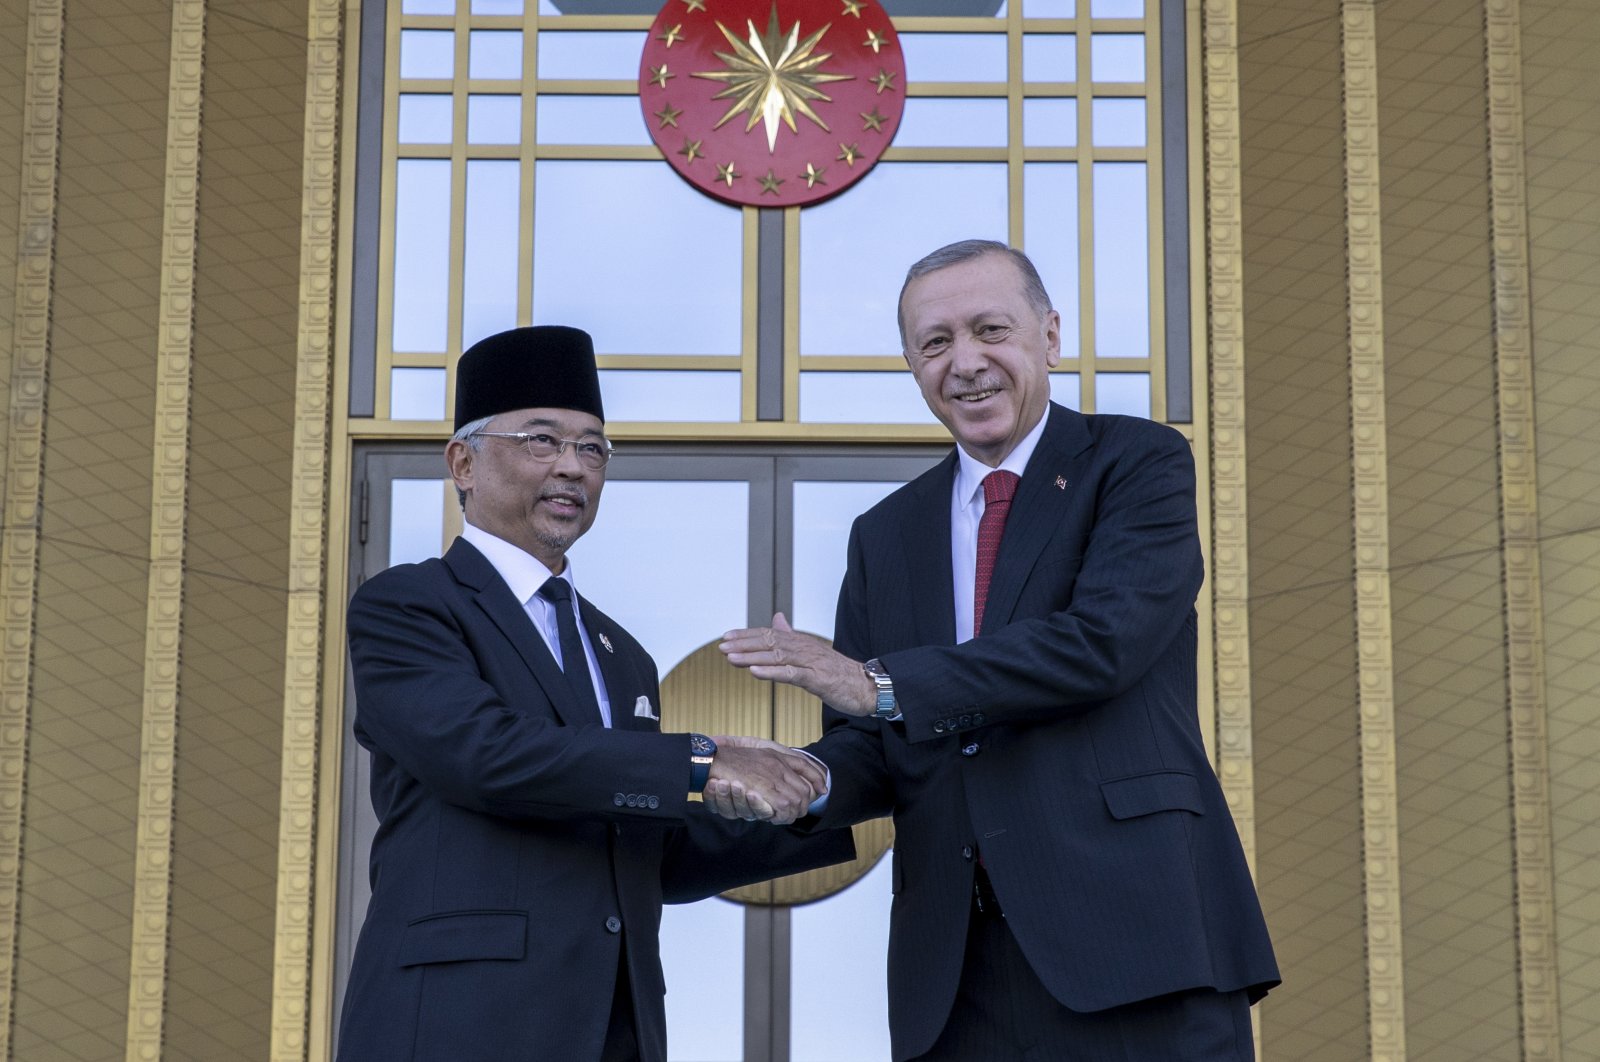 Hari Nasional Malaysia datang pada waktu khusus dalam hubungan Türkiye